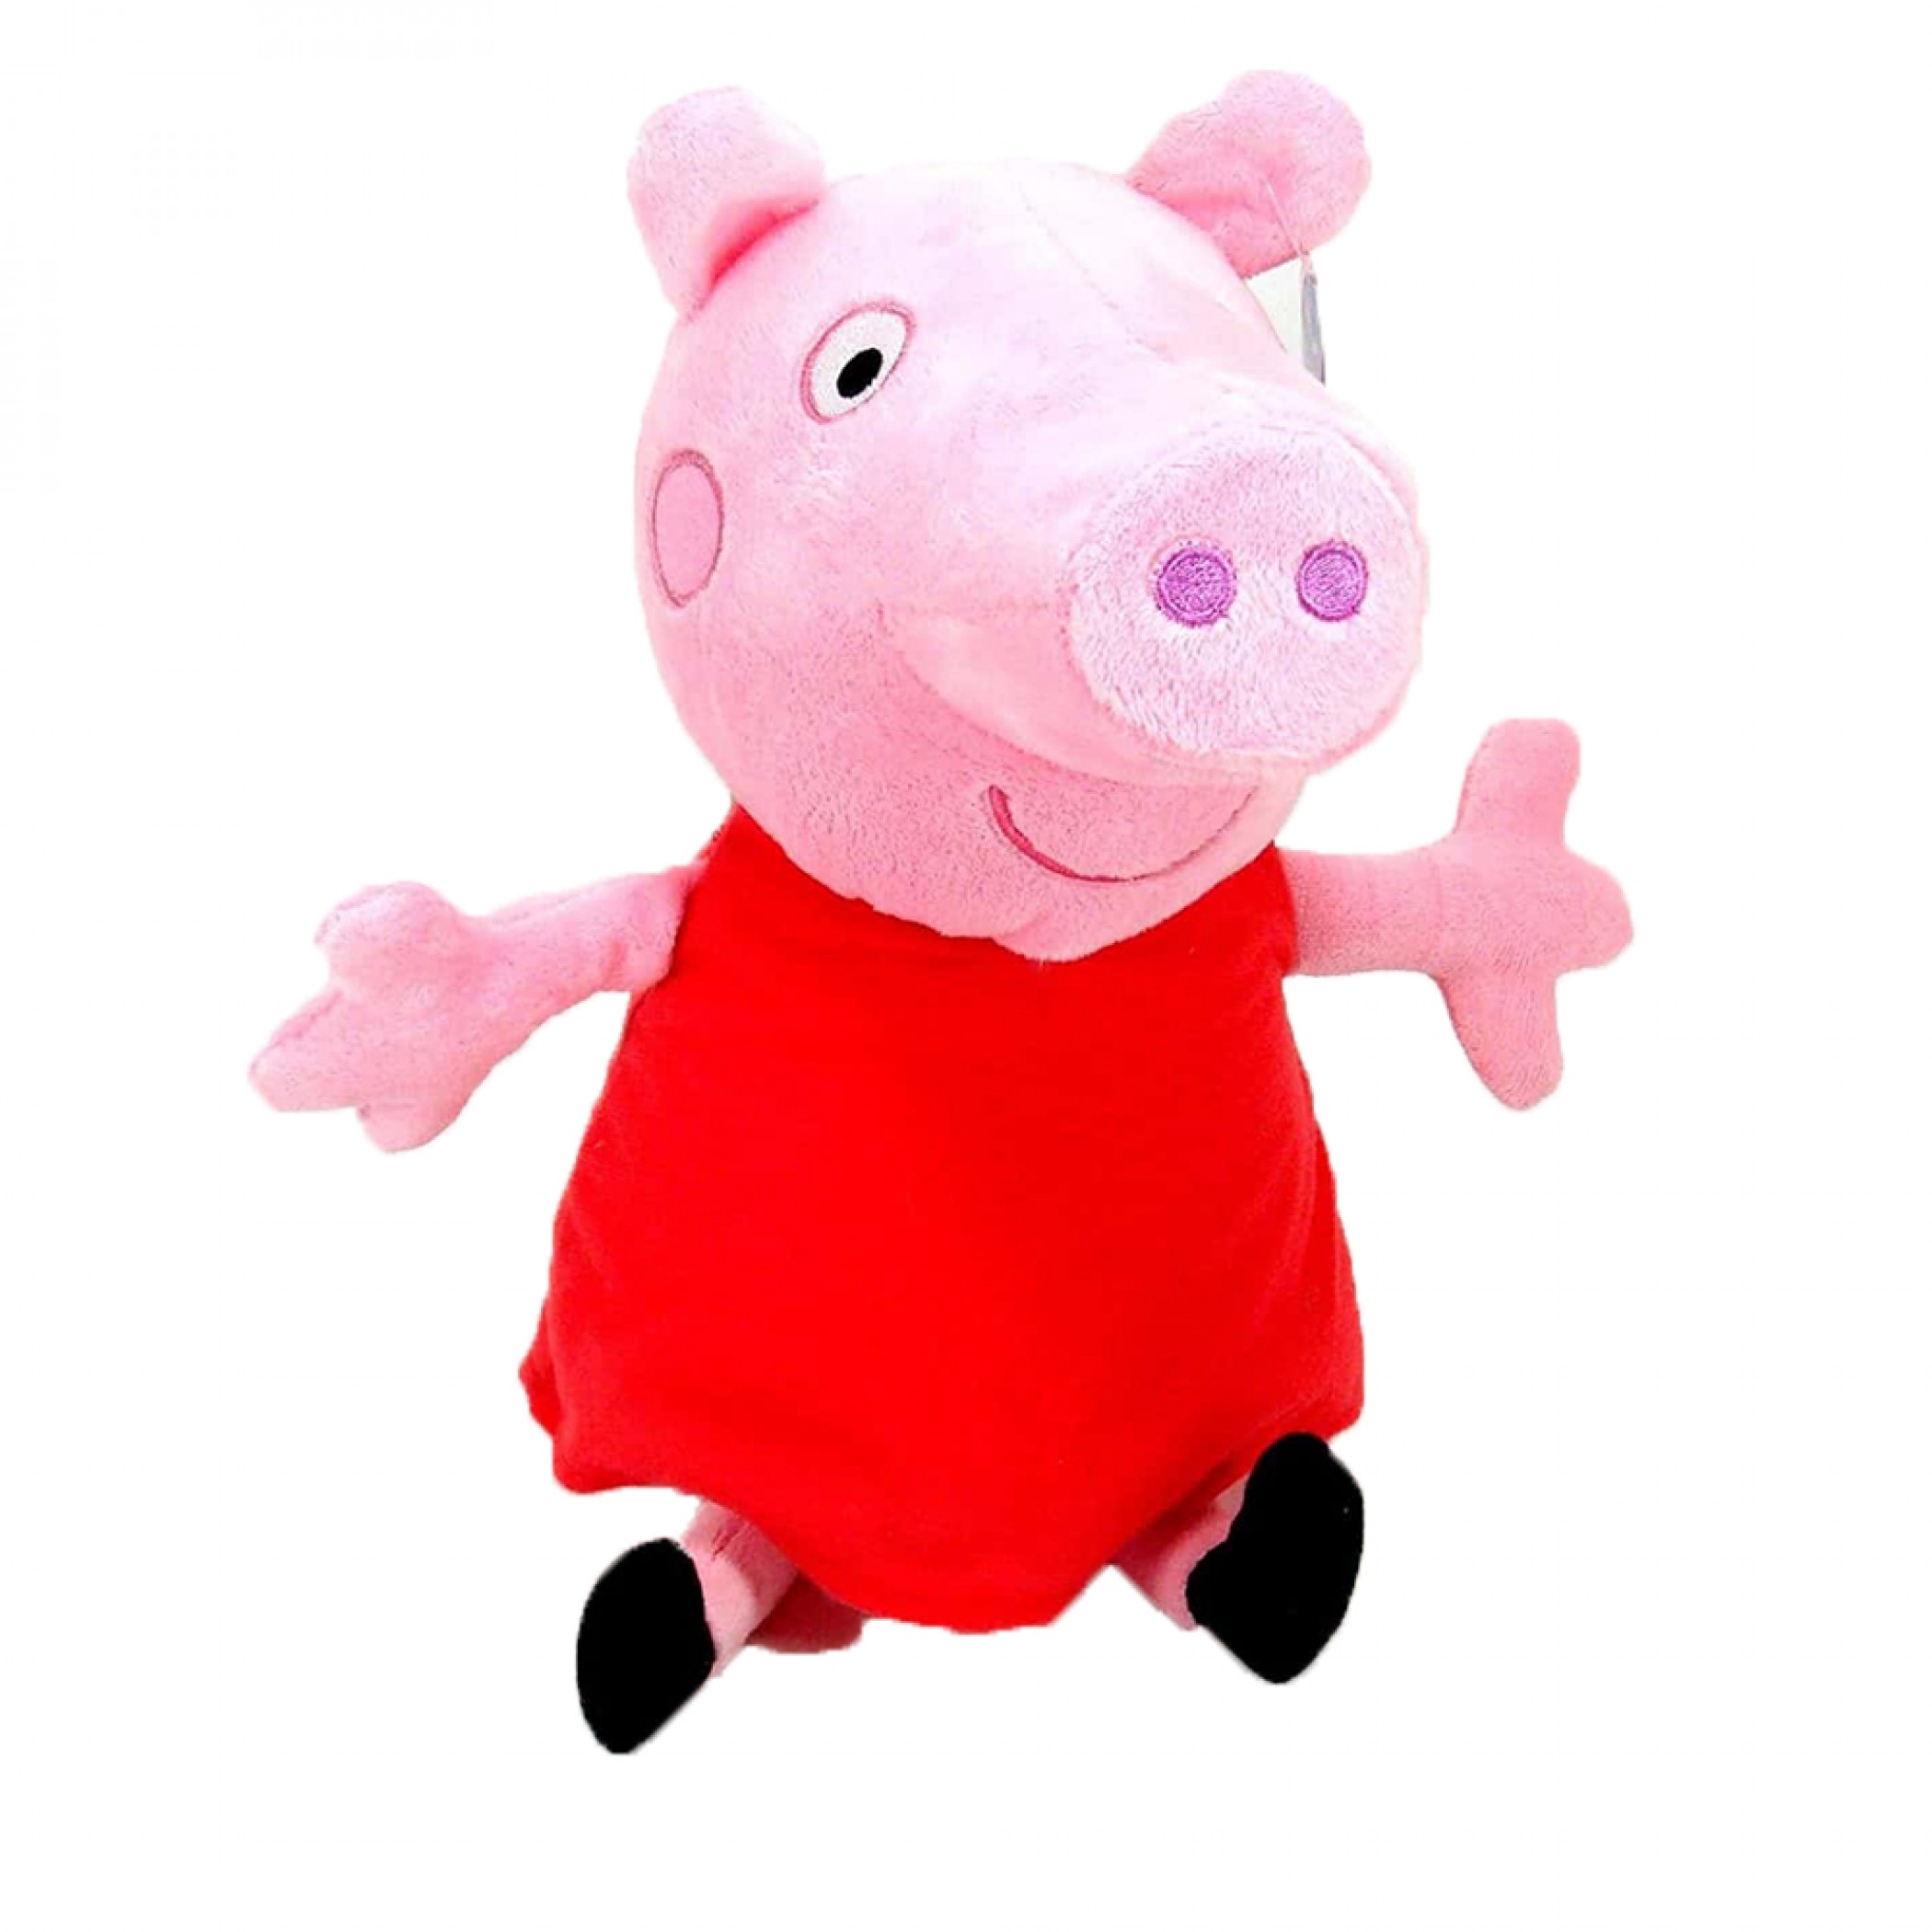 Peppa Pig 13.5" Peppa Plush Doll